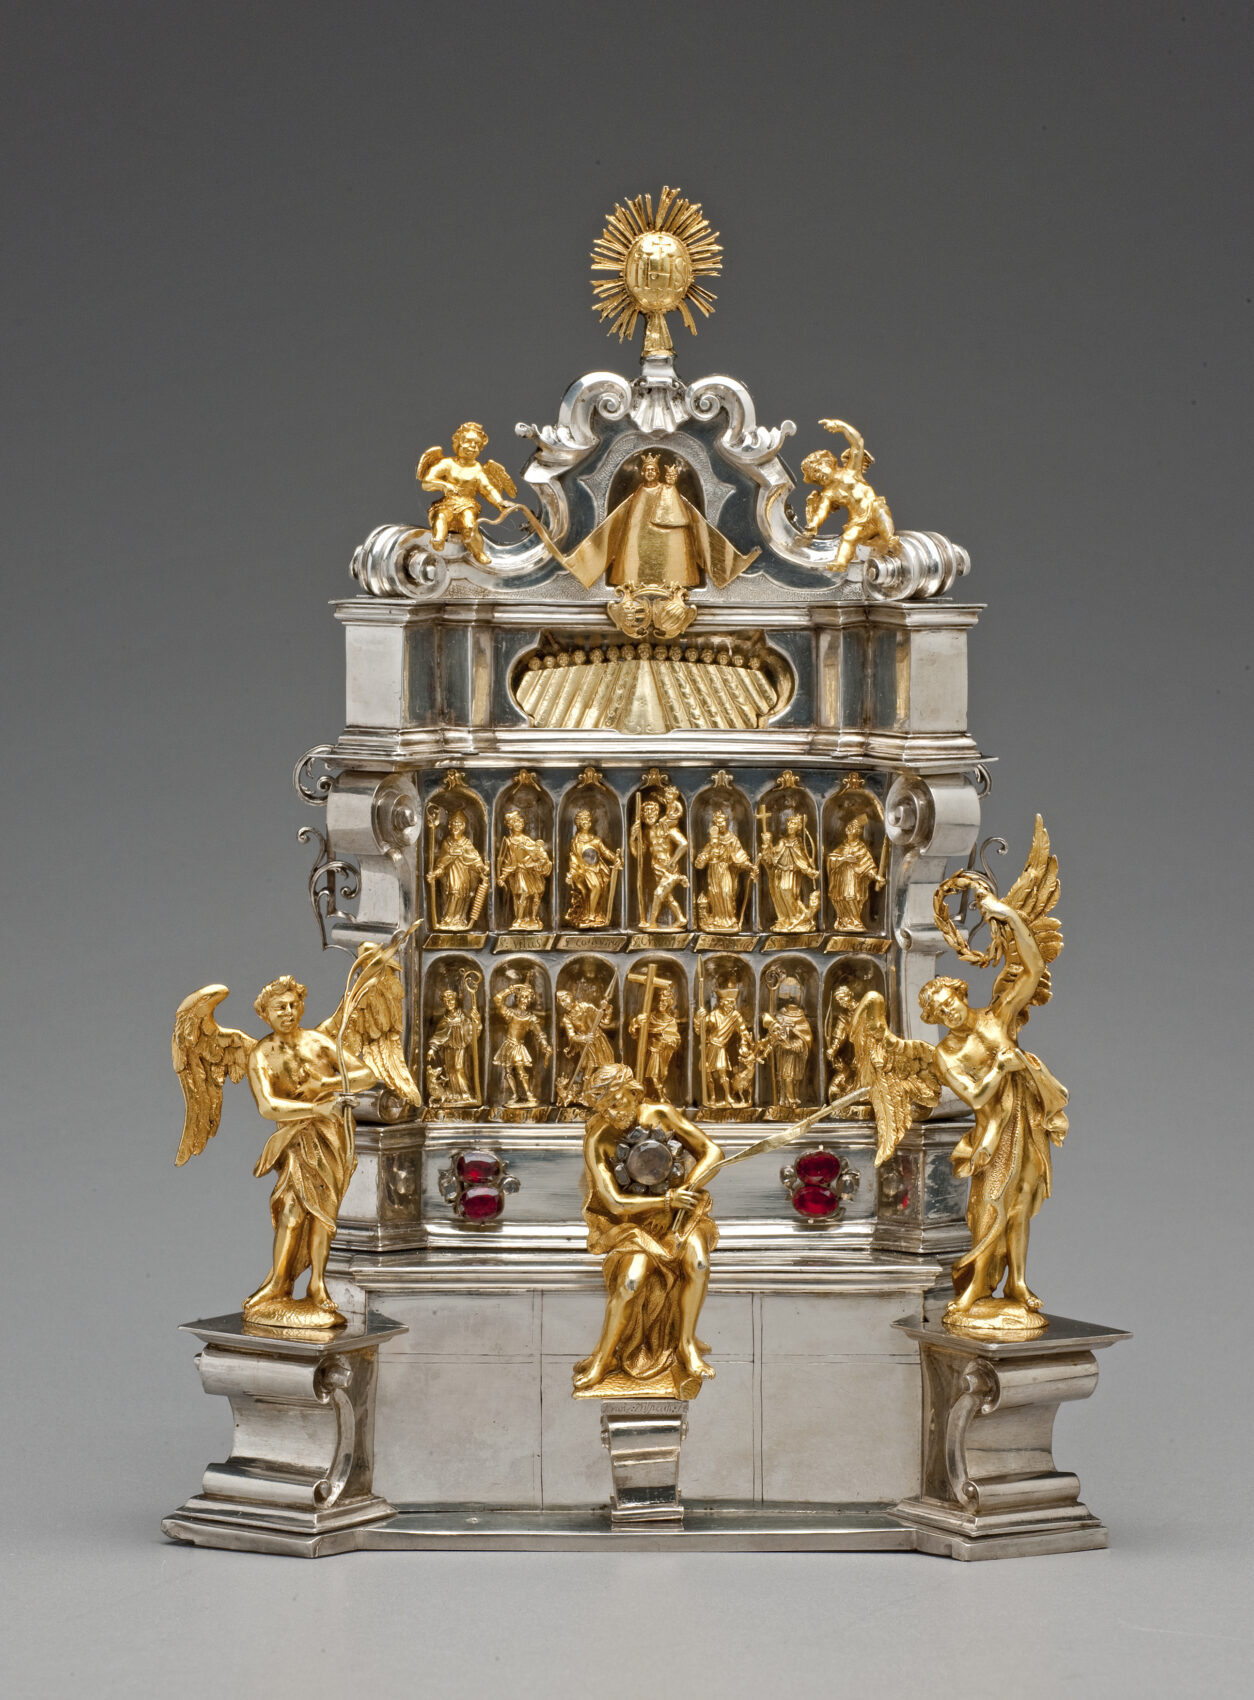 Zlatý a stříbrný oltářík s postavami 14 pomocníků a andělů